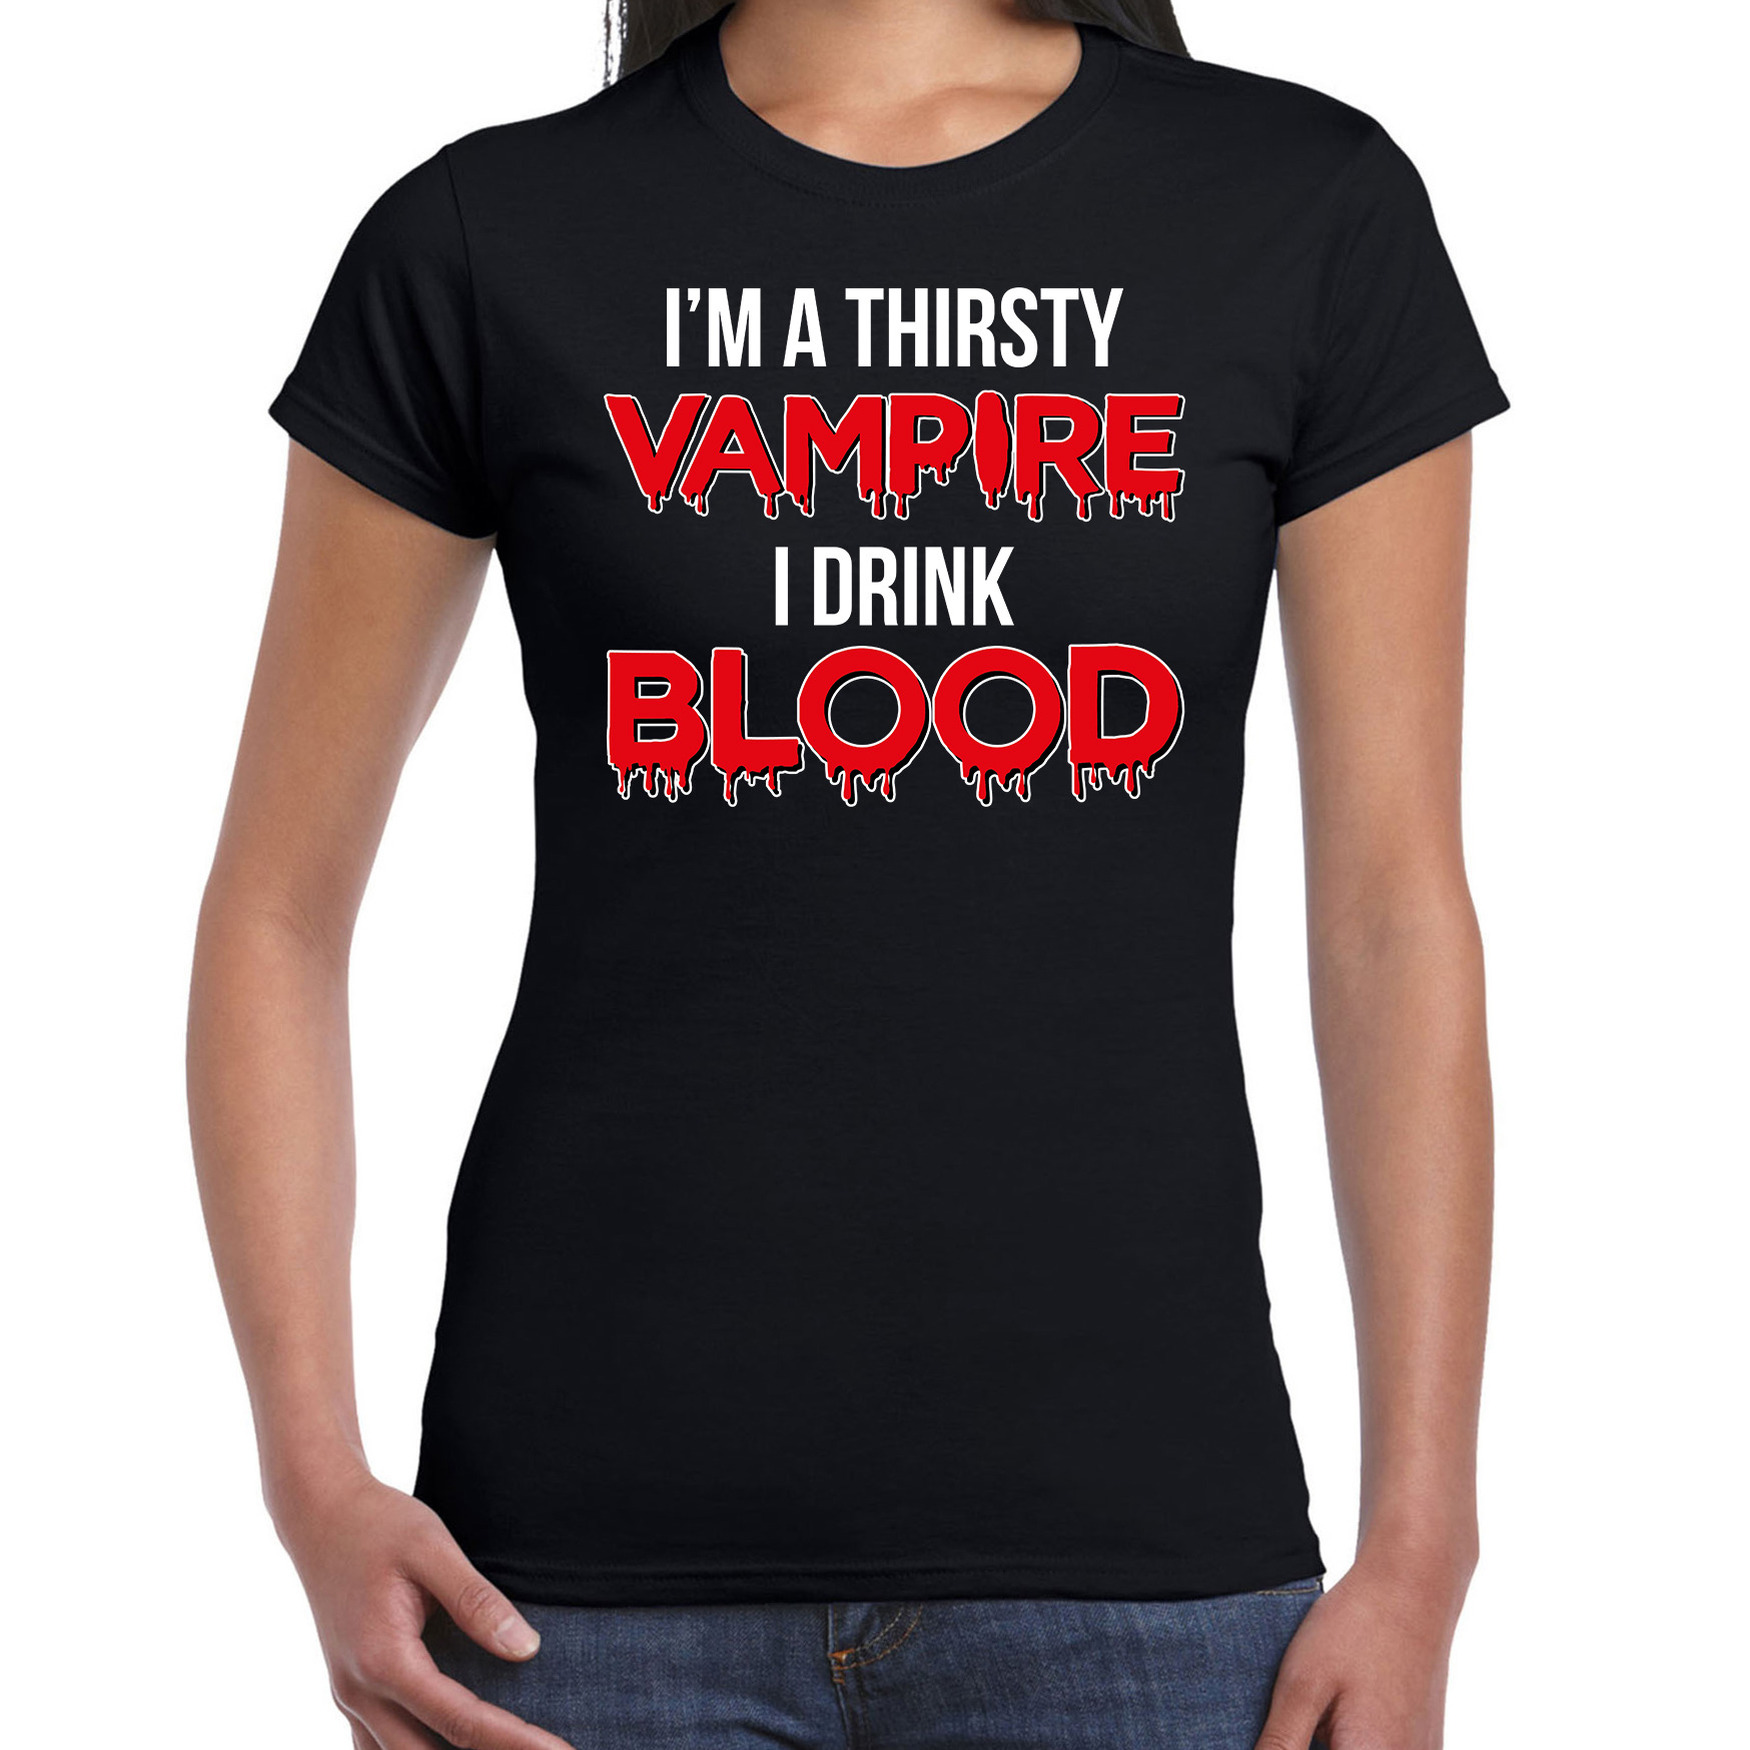 Thirsty vampire horror shirt zwart voor dames vampier verkleed t-shirt-kostuum